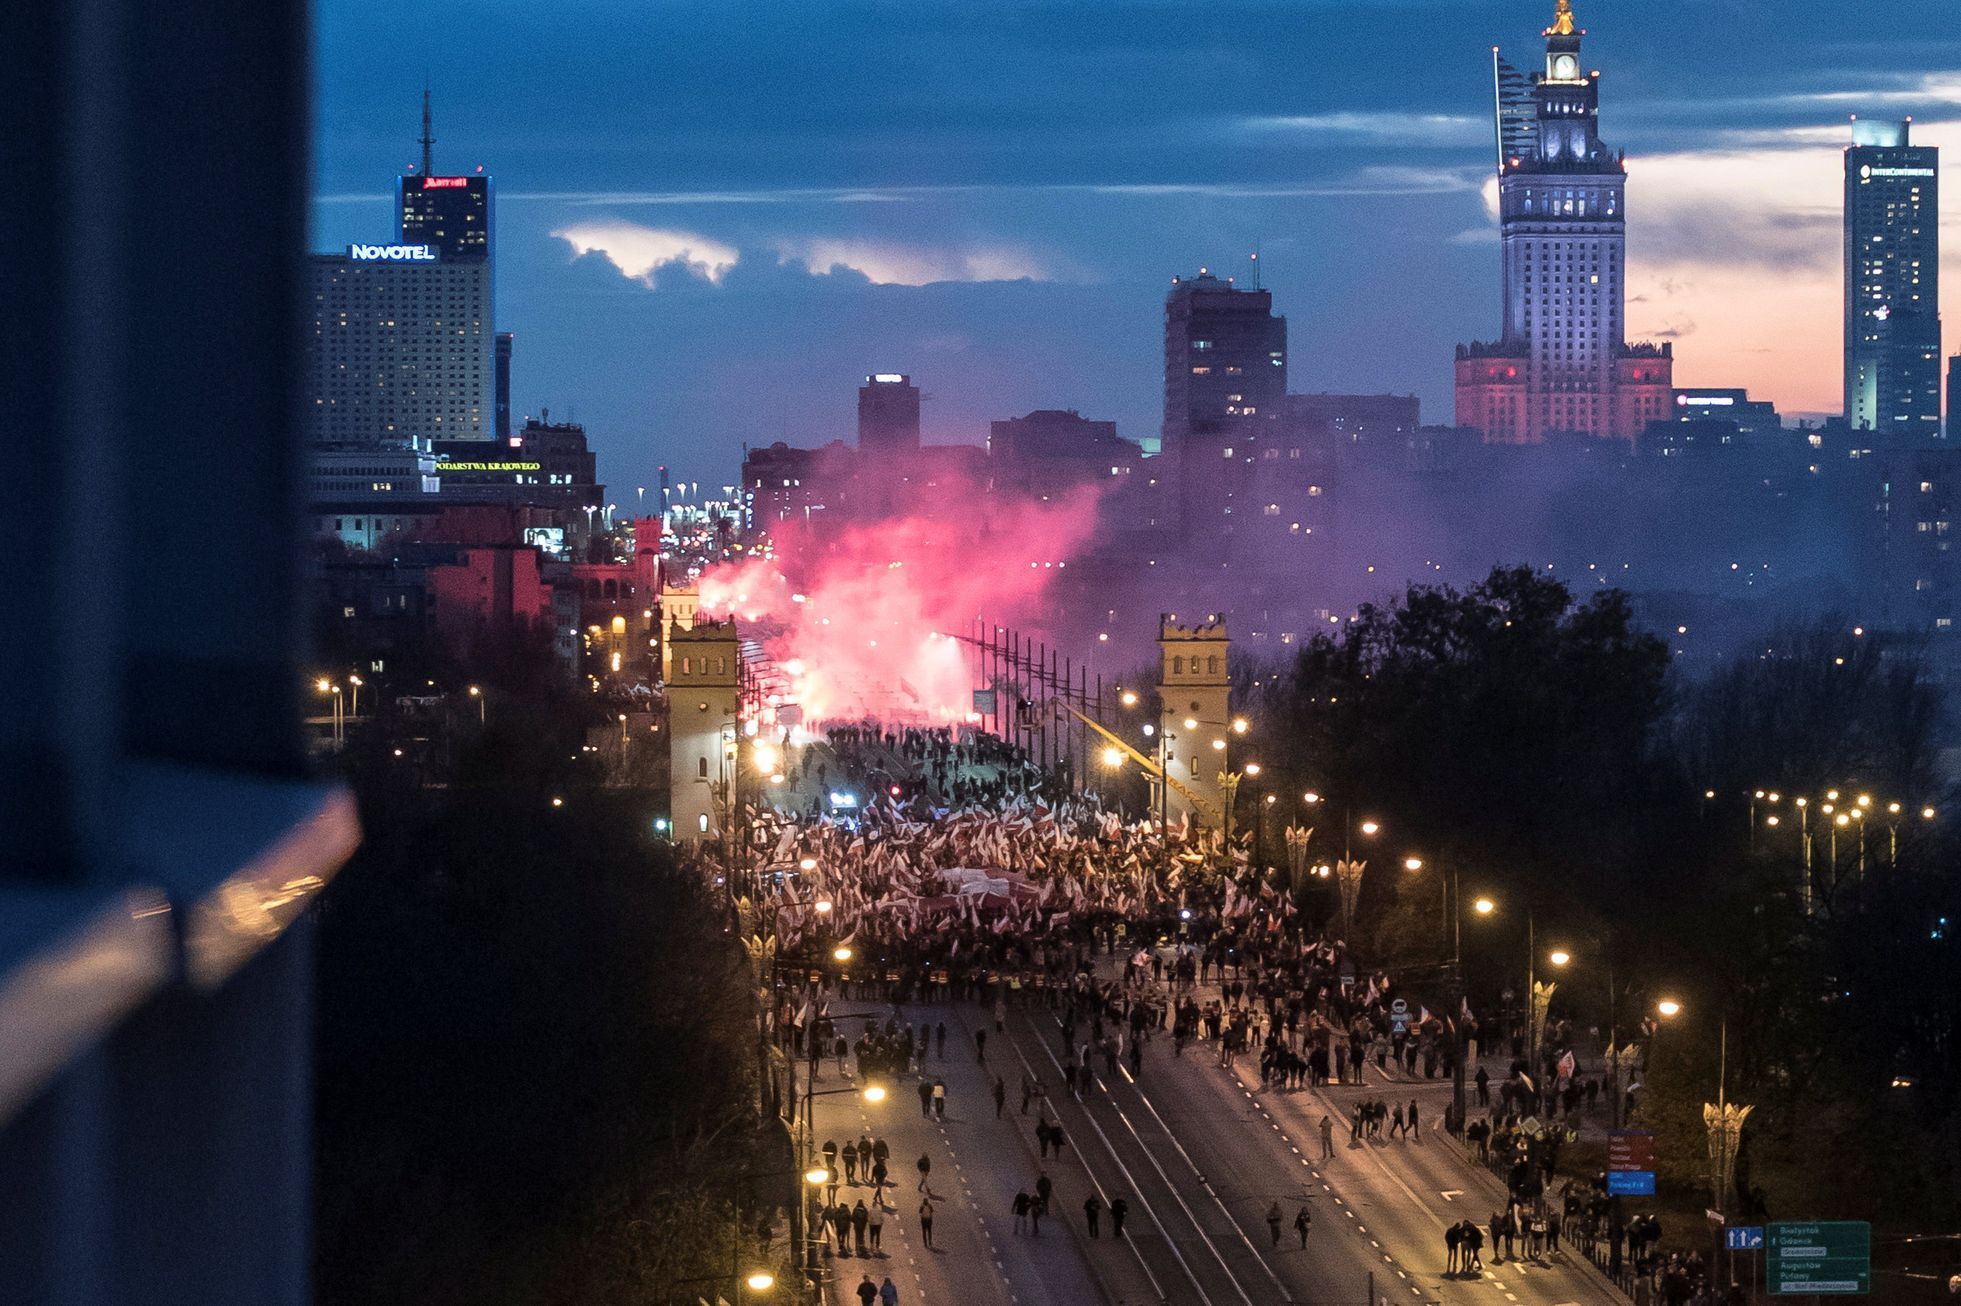 Pochod na výročí 99 let polské nezávislosti, na kterém se například vykřikovalo "Evropa bude bílá, nebo neobyvatelná".